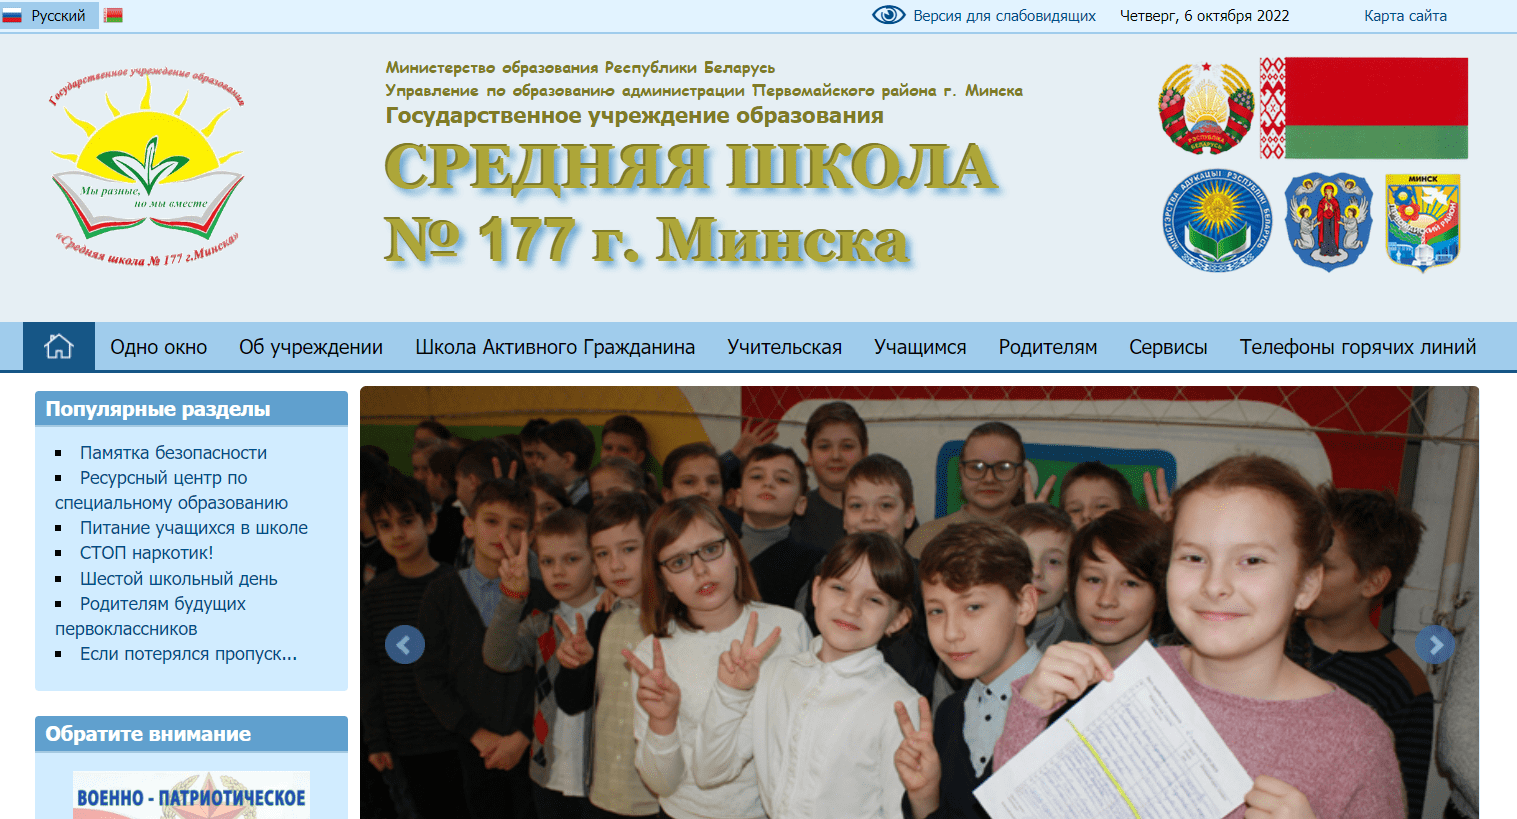 Средняя школа № 177 г. Минска (sch177.minsk.edu.by) schools.by